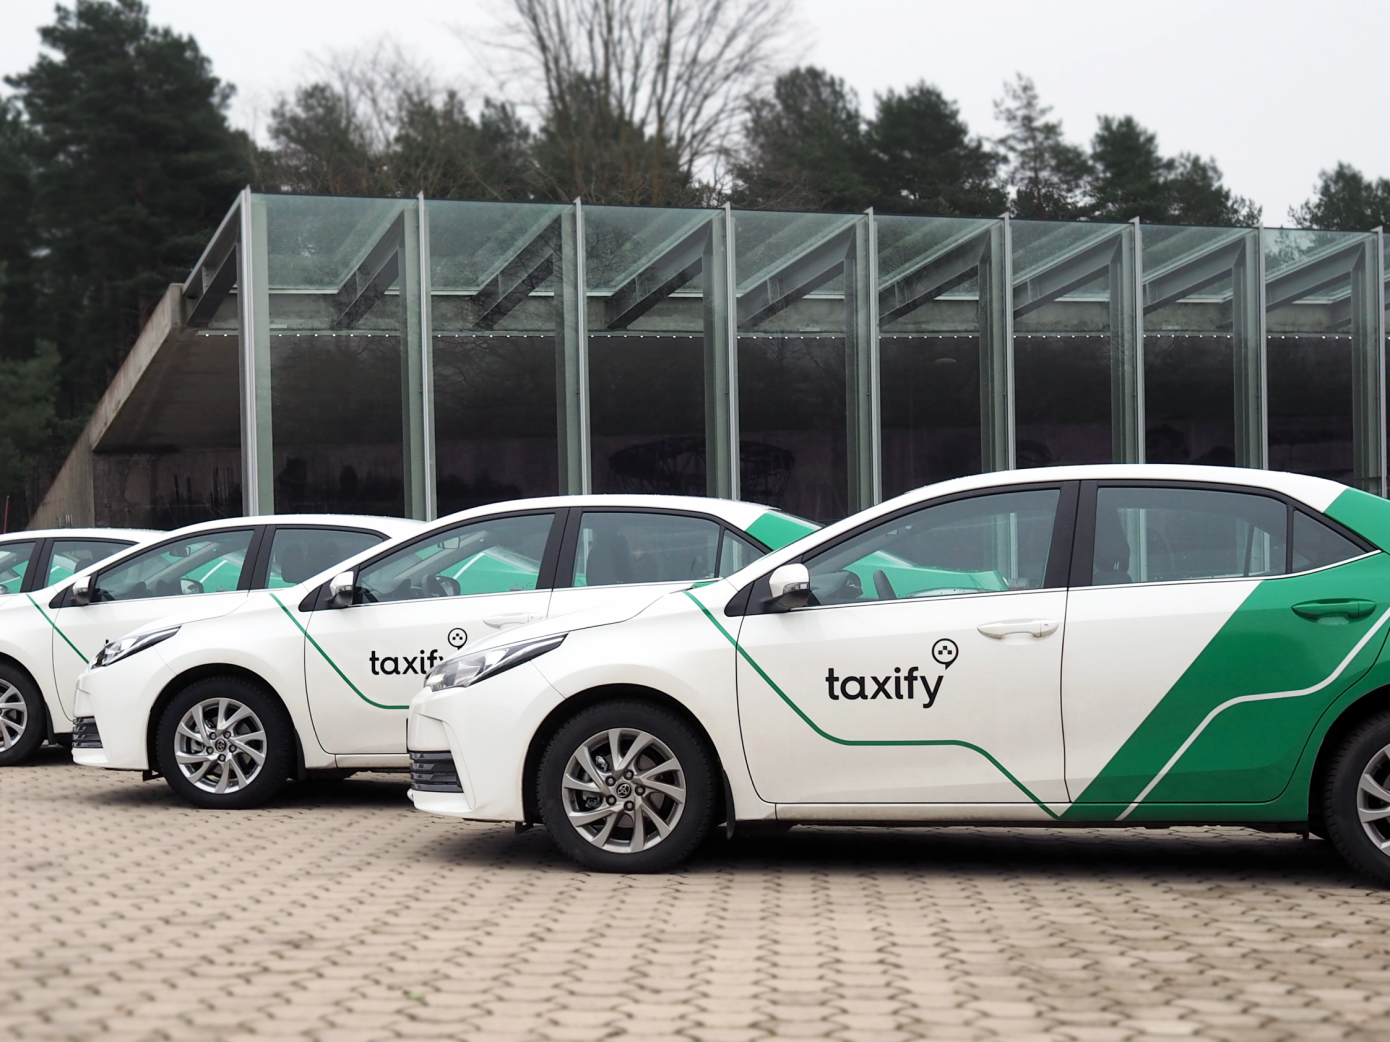 Estonyalı araç çağırma hizmeti Taxify 1 milyar dolar değere ulaştı